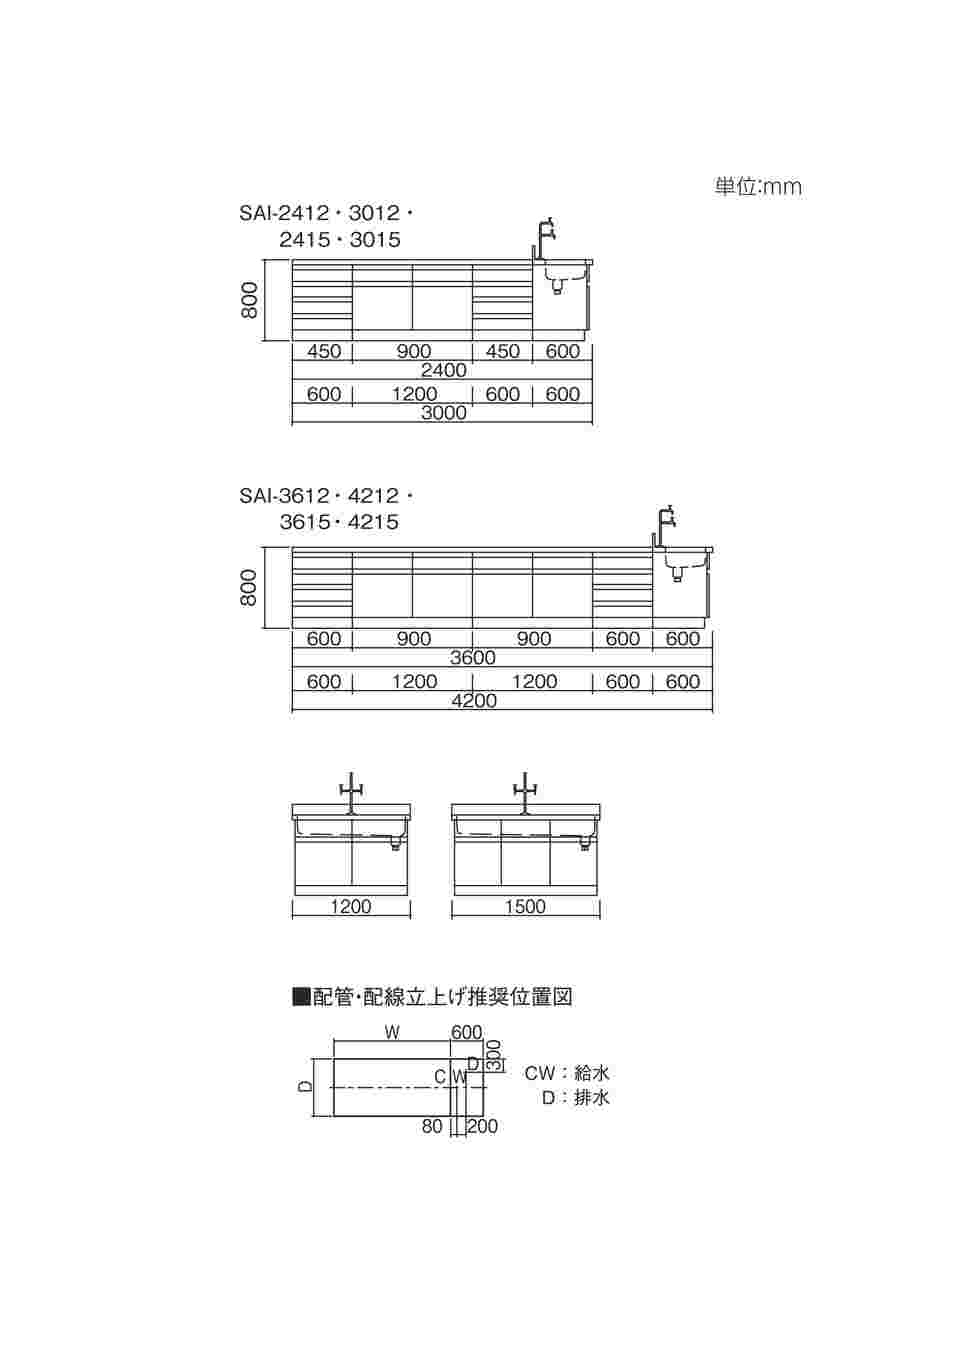 アズワン3-7765-03中央実験台木製タイプSAO-3012(3000×1200×800mm)(as1-3-7765-03) - 1